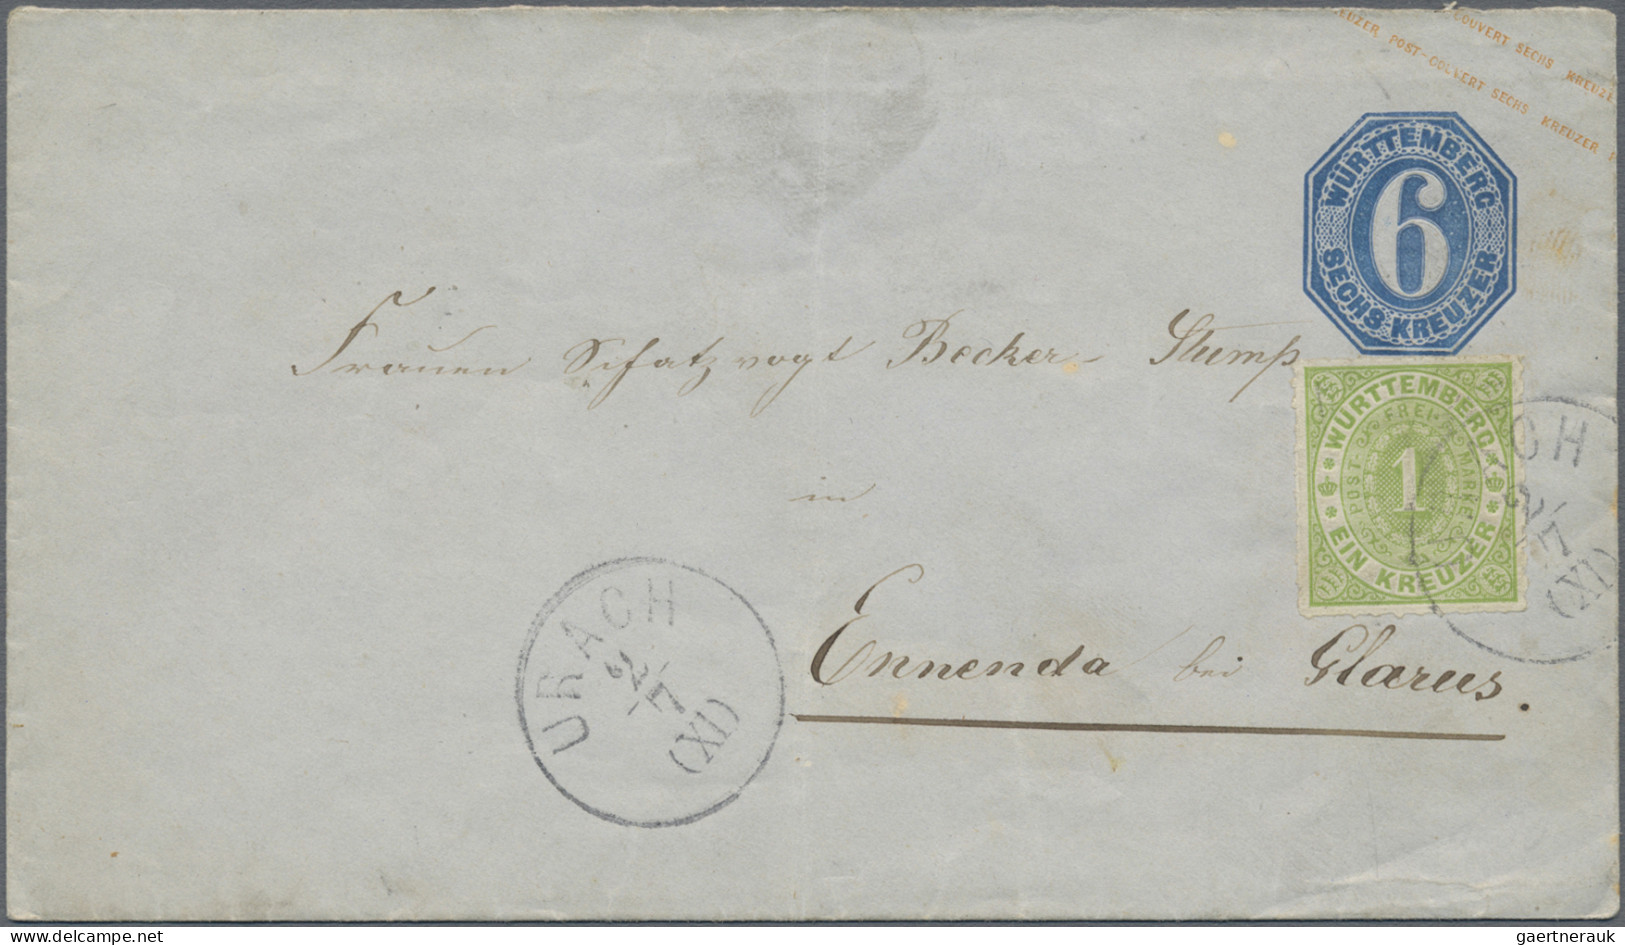 Württemberg - Marken und Briefe: 1860/1874 (ca.), Konvolut von über 125 Belegen